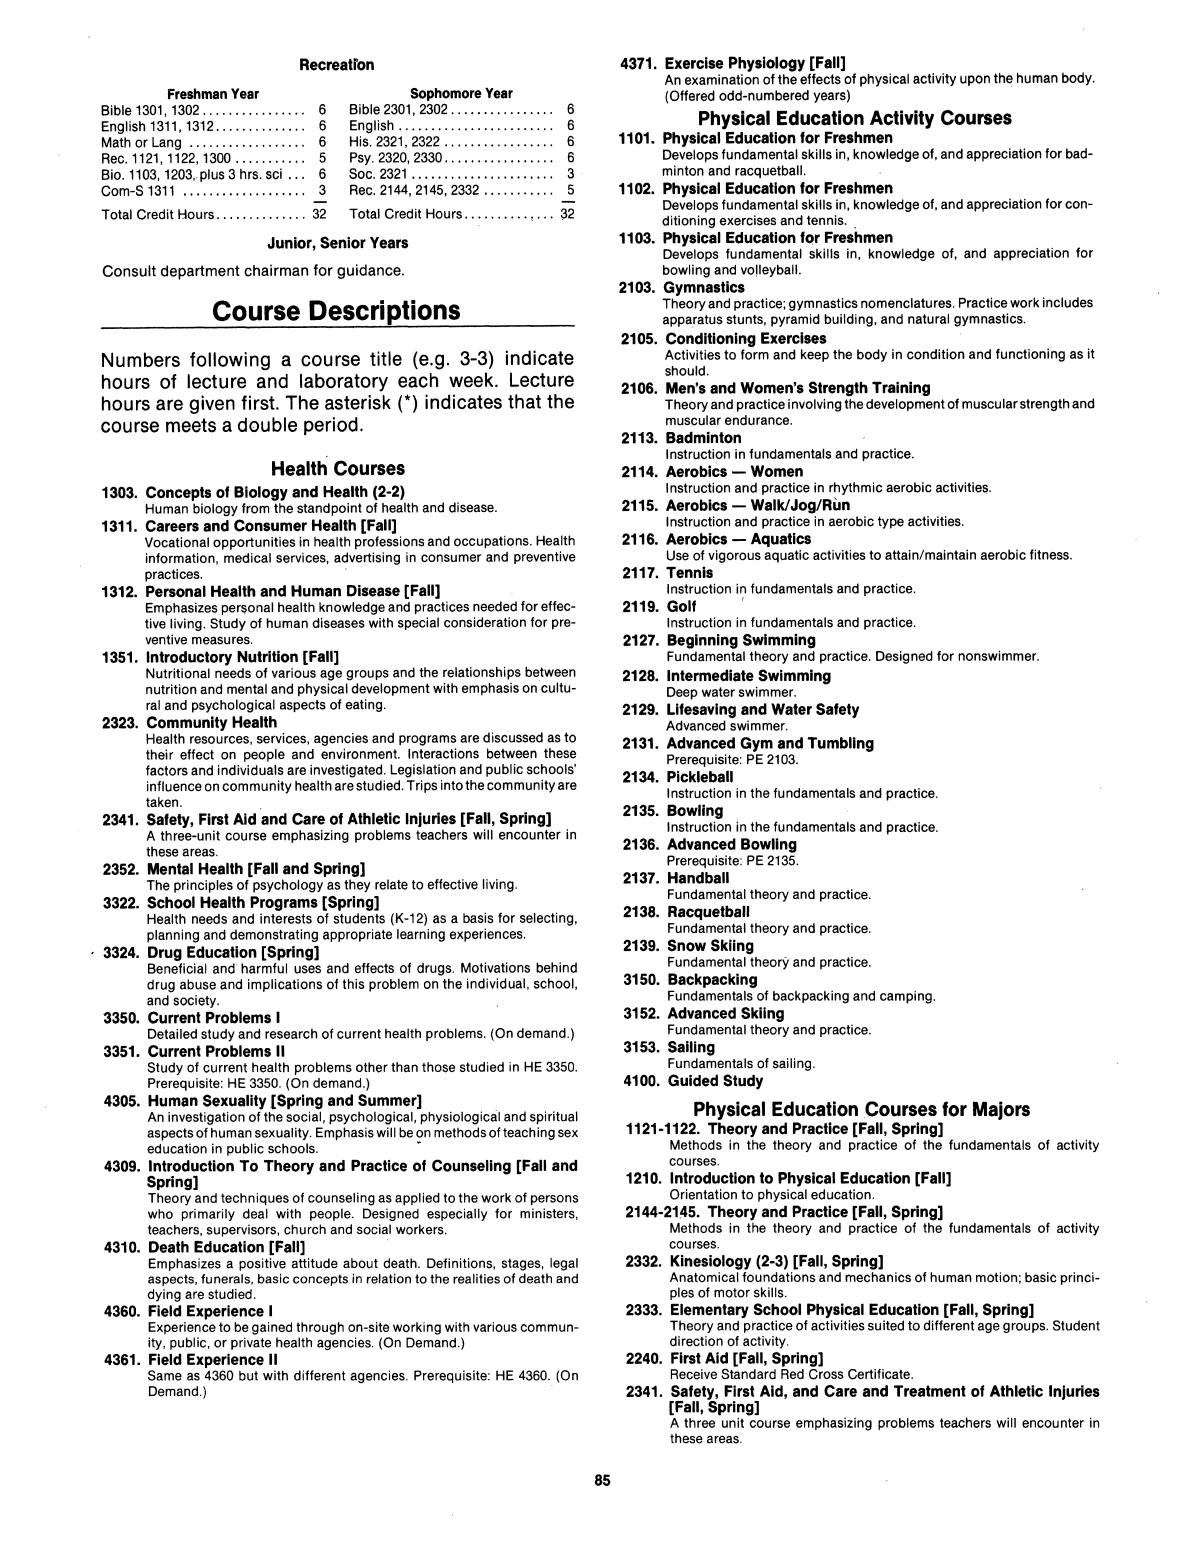 Catalog of Abilene Christian University, 1983-1984
                                                
                                                    85
                                                